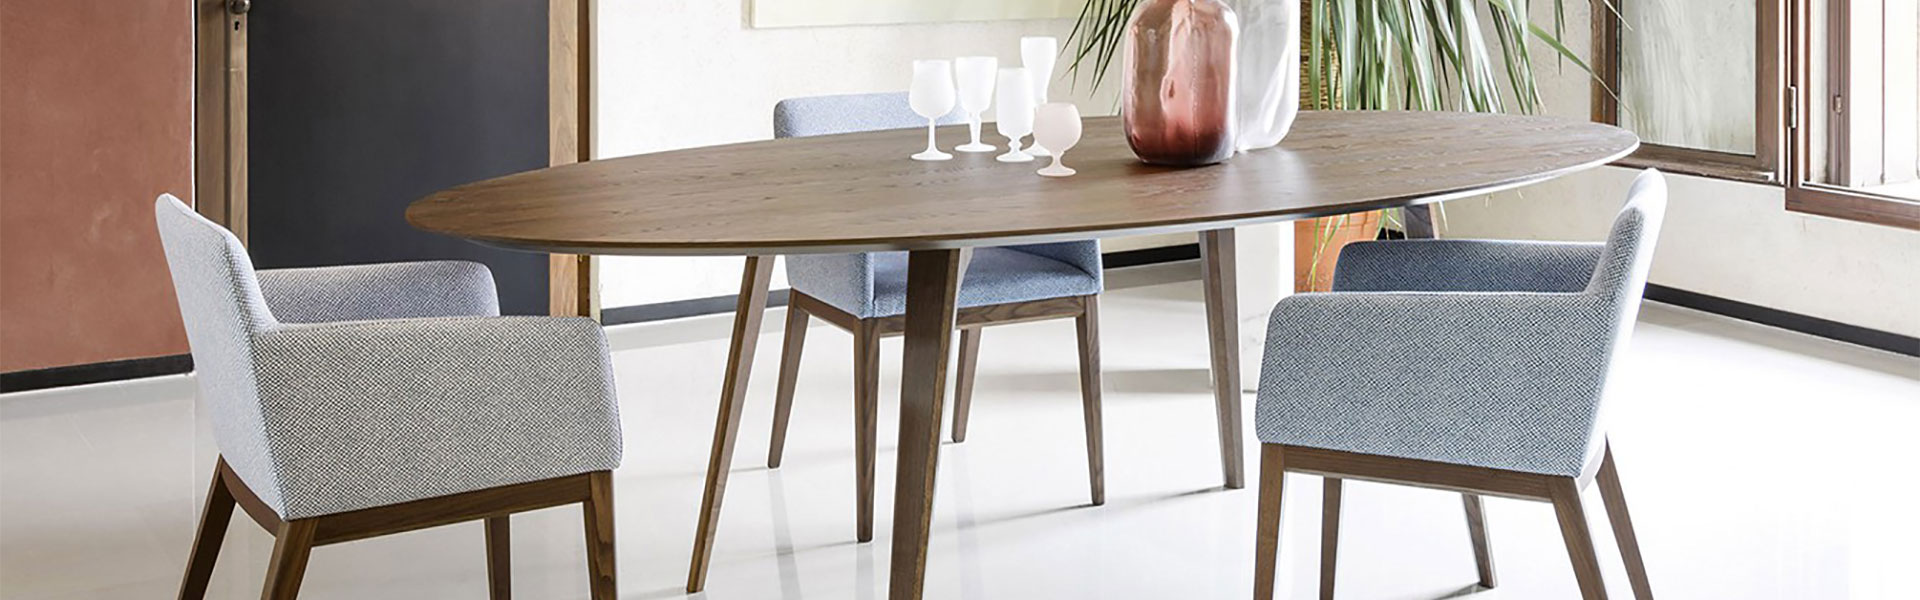 table ovale en bois avec fauteuils